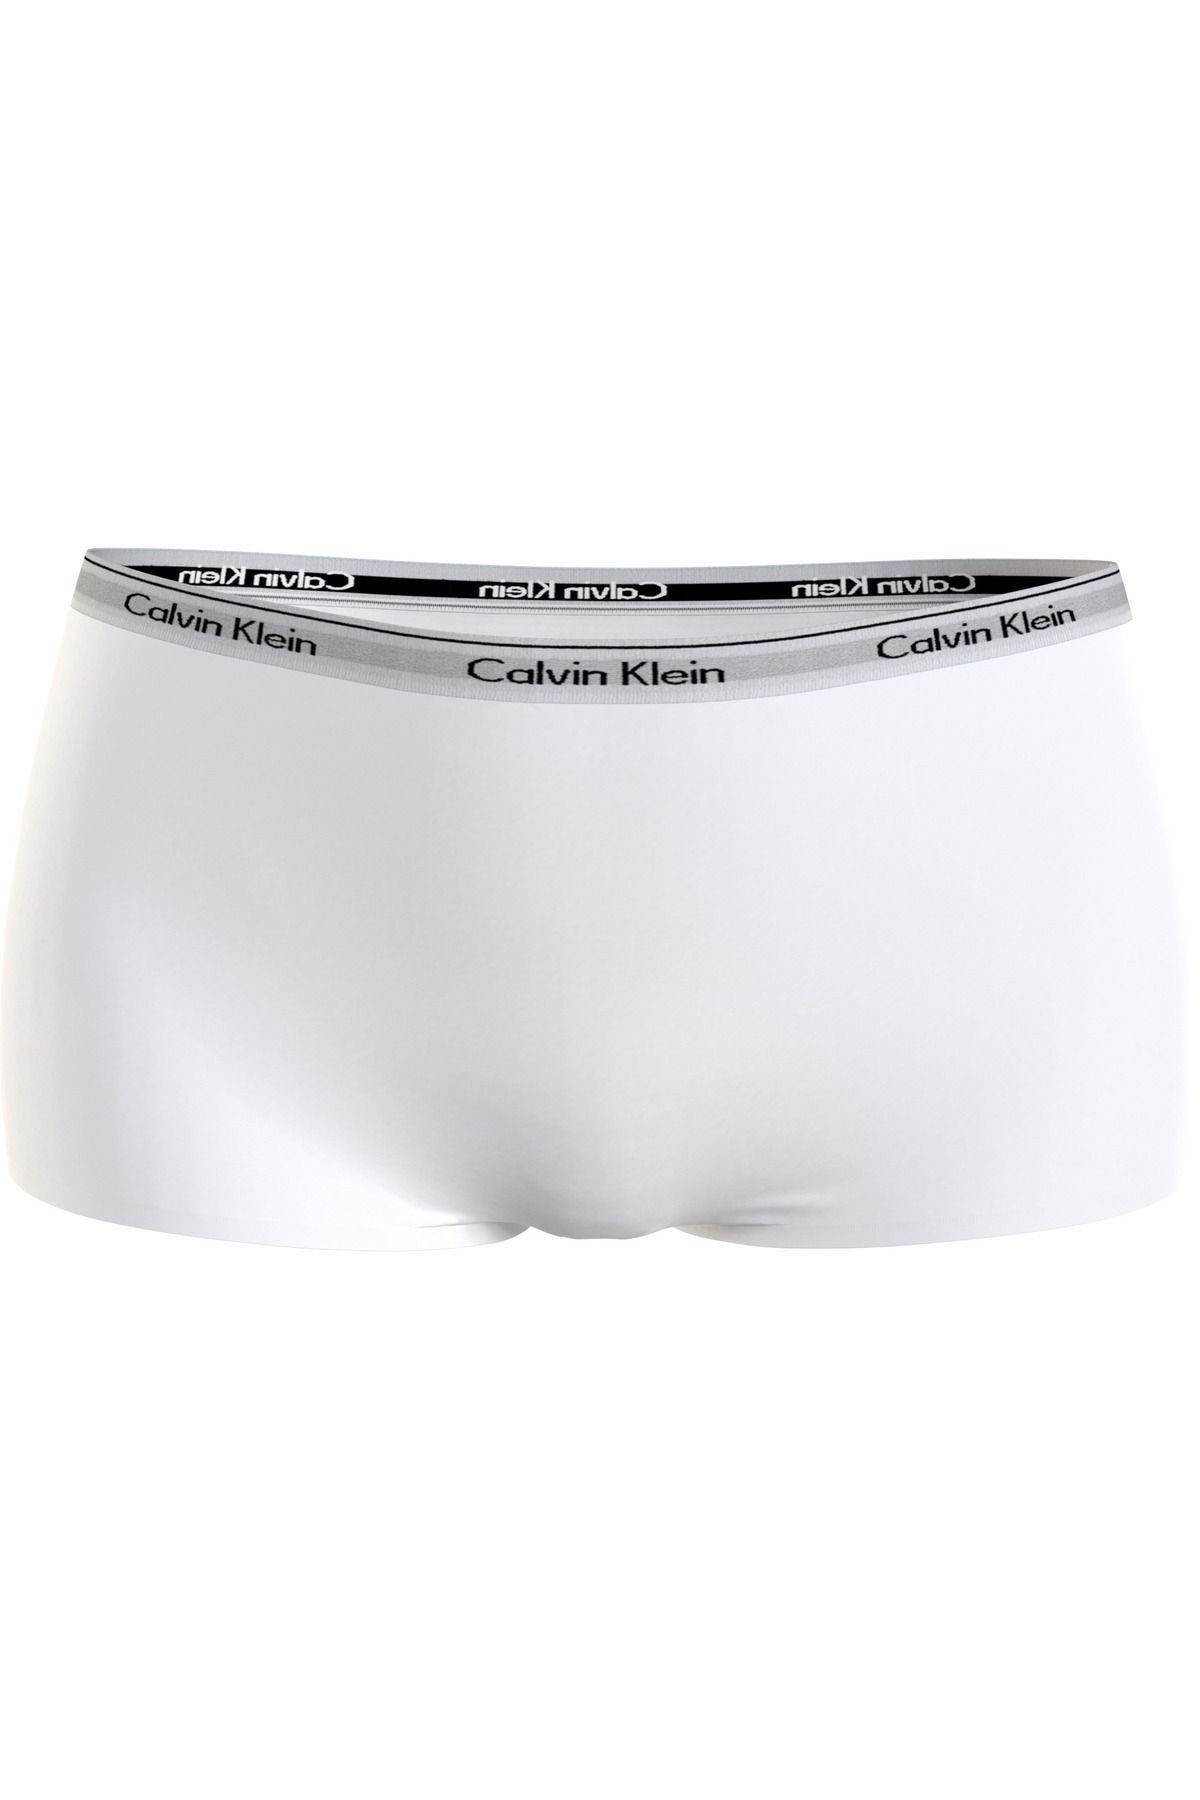 Calvin Klein Kadın Marka Logolu Elastik Bantlı Günlük Kullanıma Uygun White Külot 000qd5195e-100